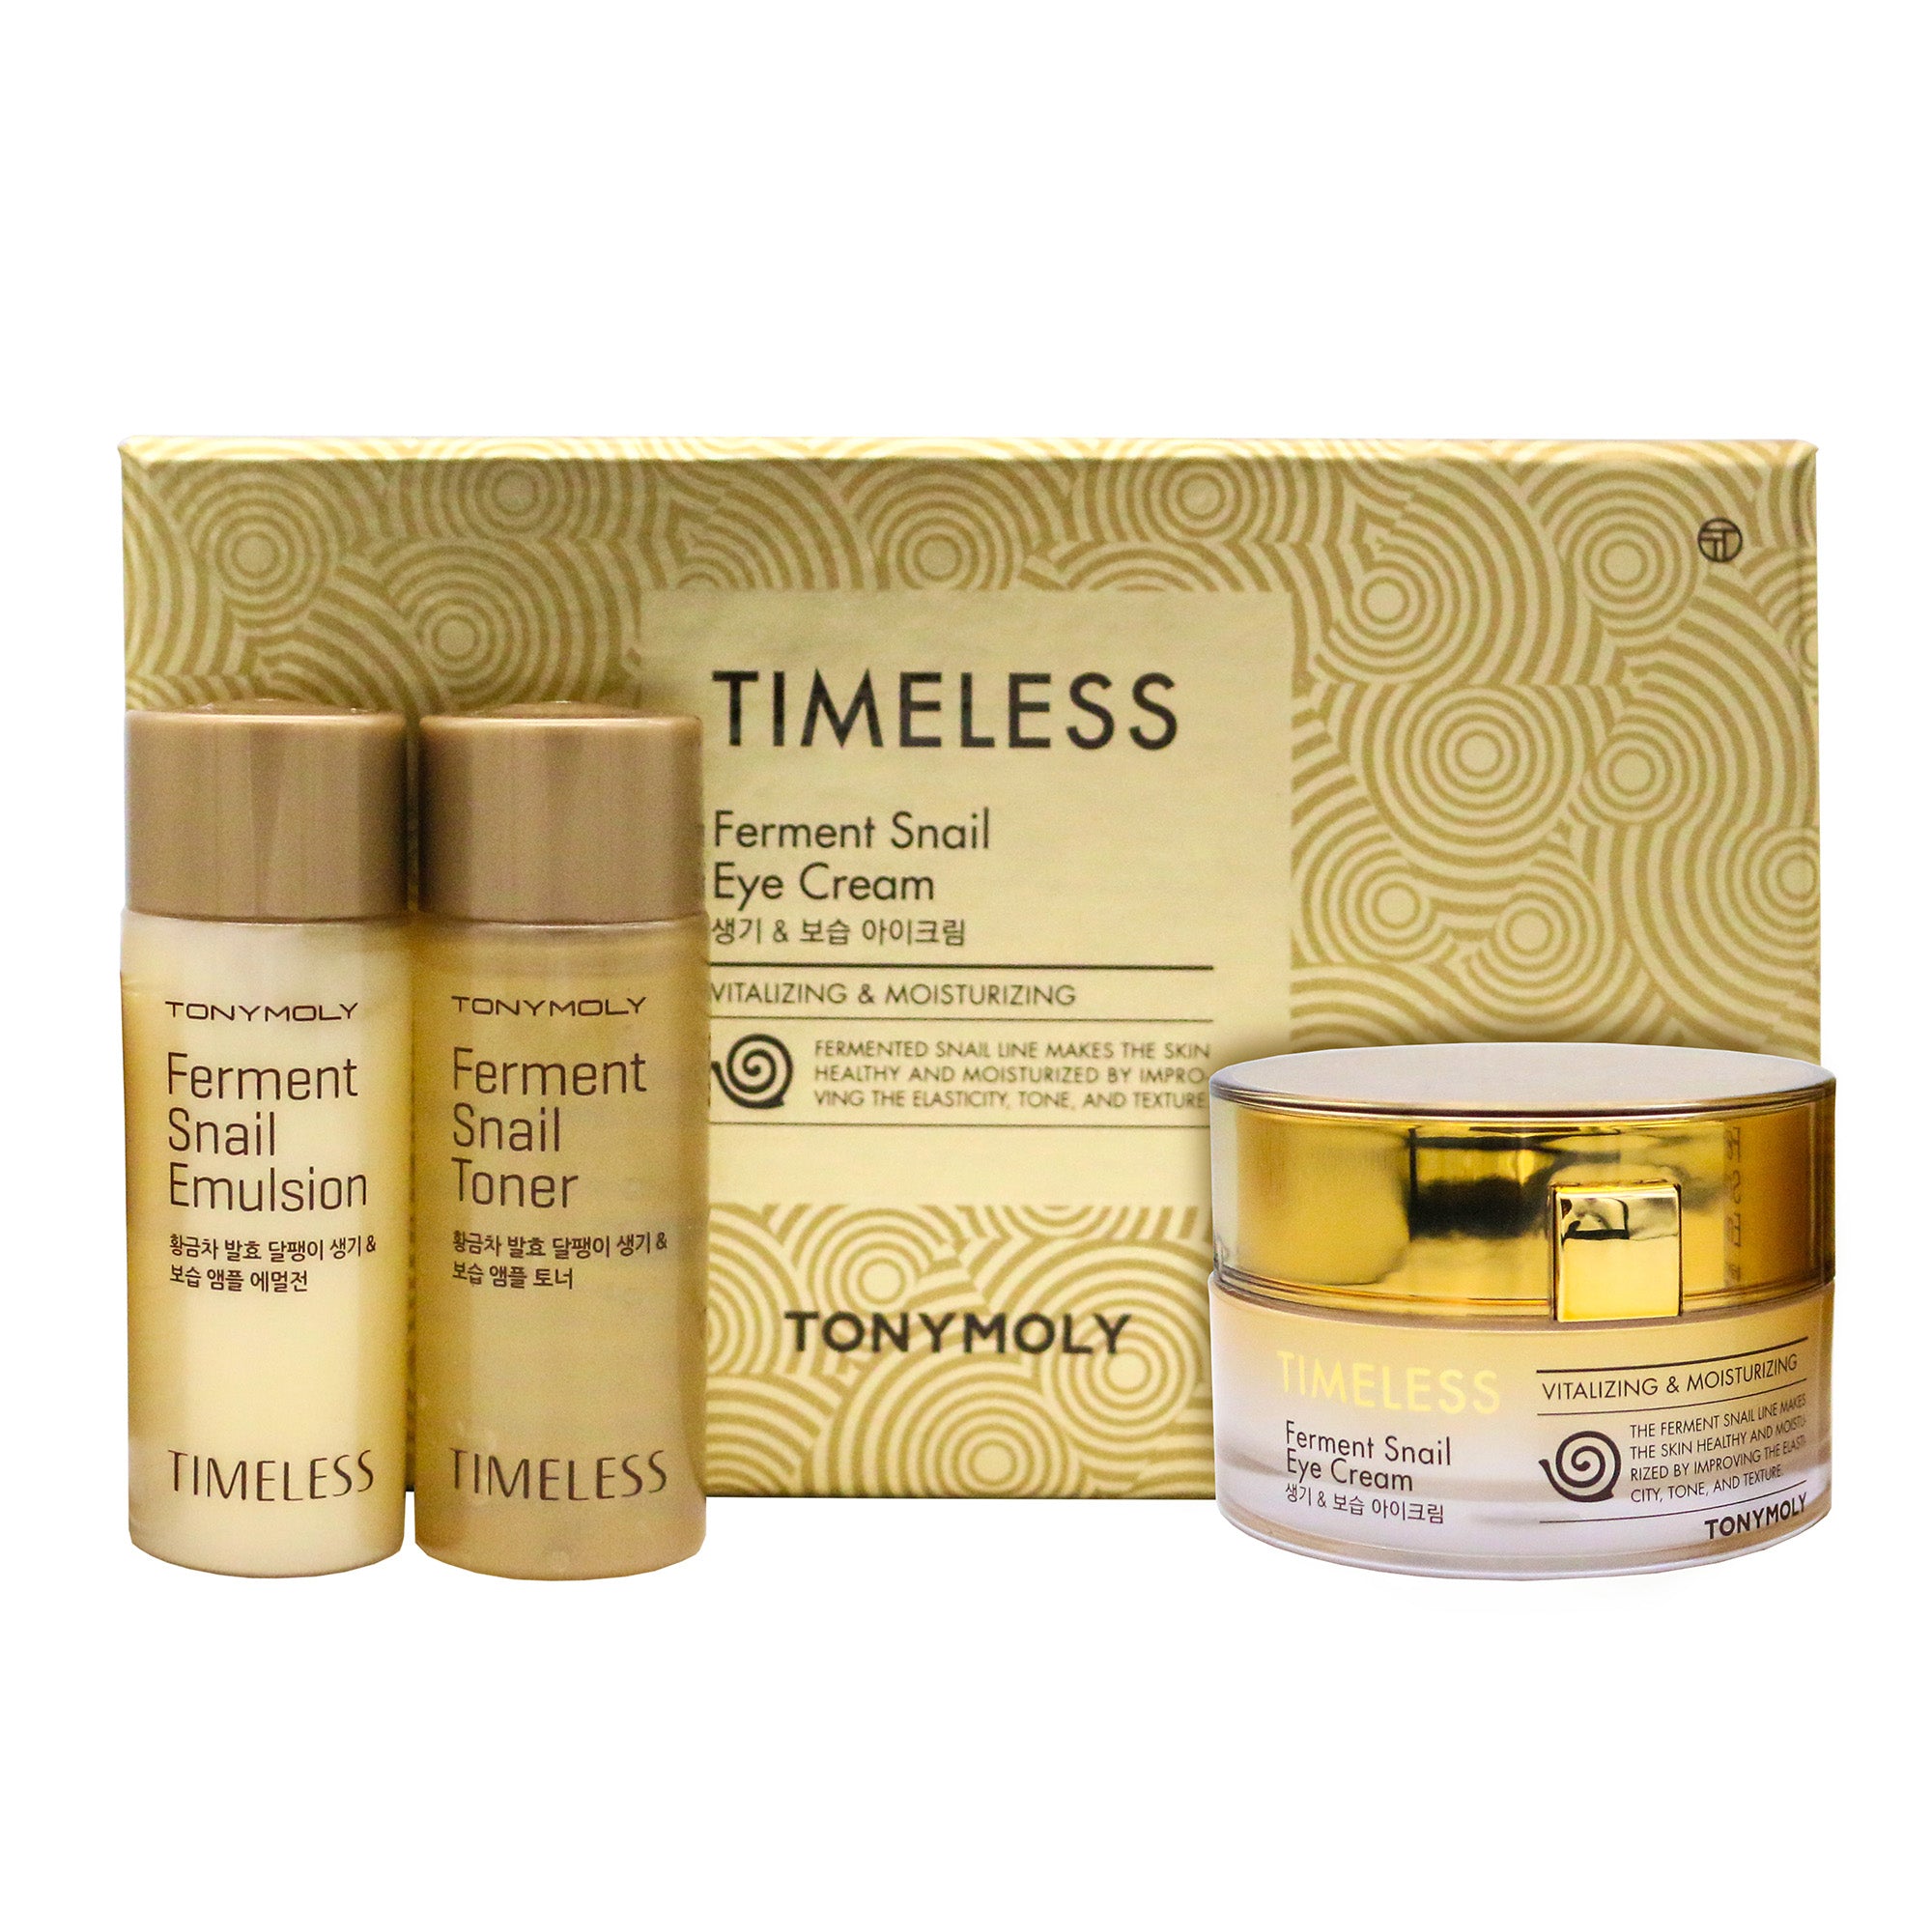 TONYMOLY Timeless Ferment Snail Eye Cream (Includes Free 20ml Ferment Snail Toner & 20ml Ferment Snail Emulsion) | Korean Skin Care